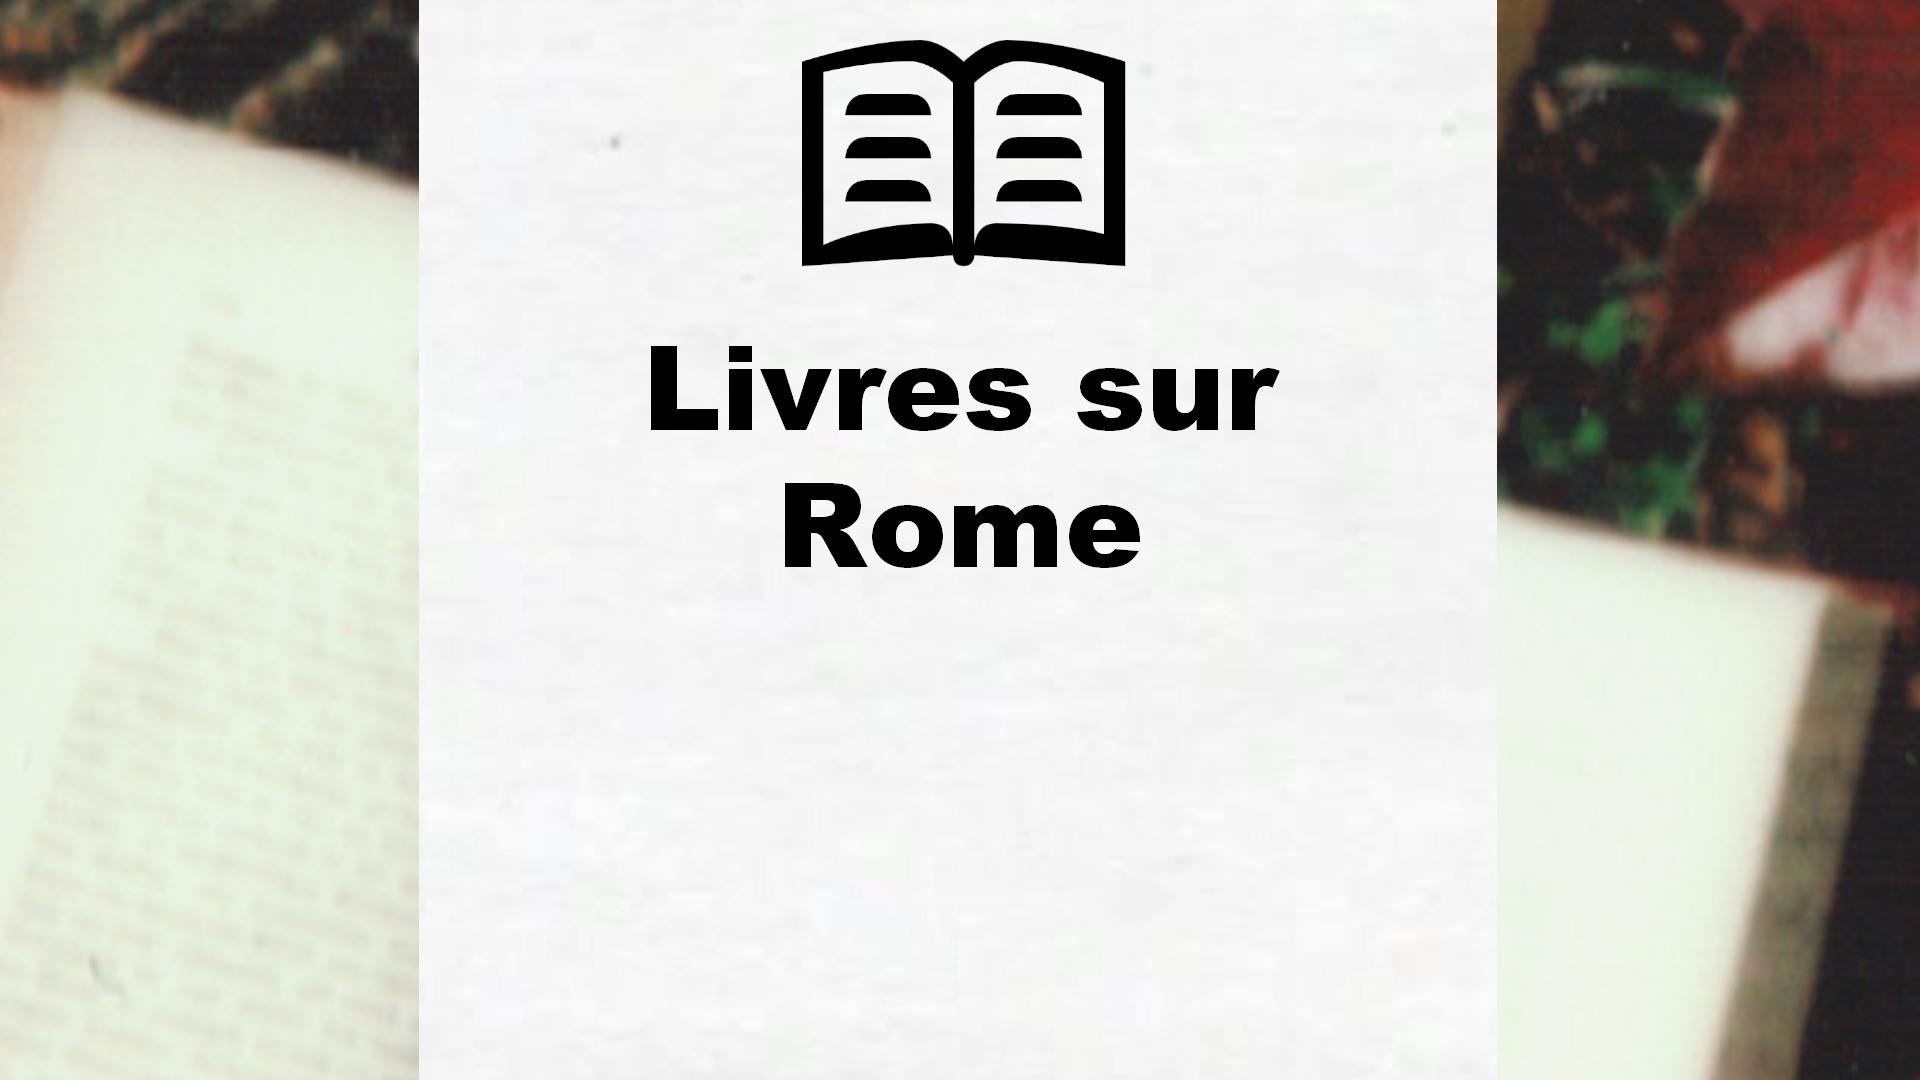 Livres sur Rome